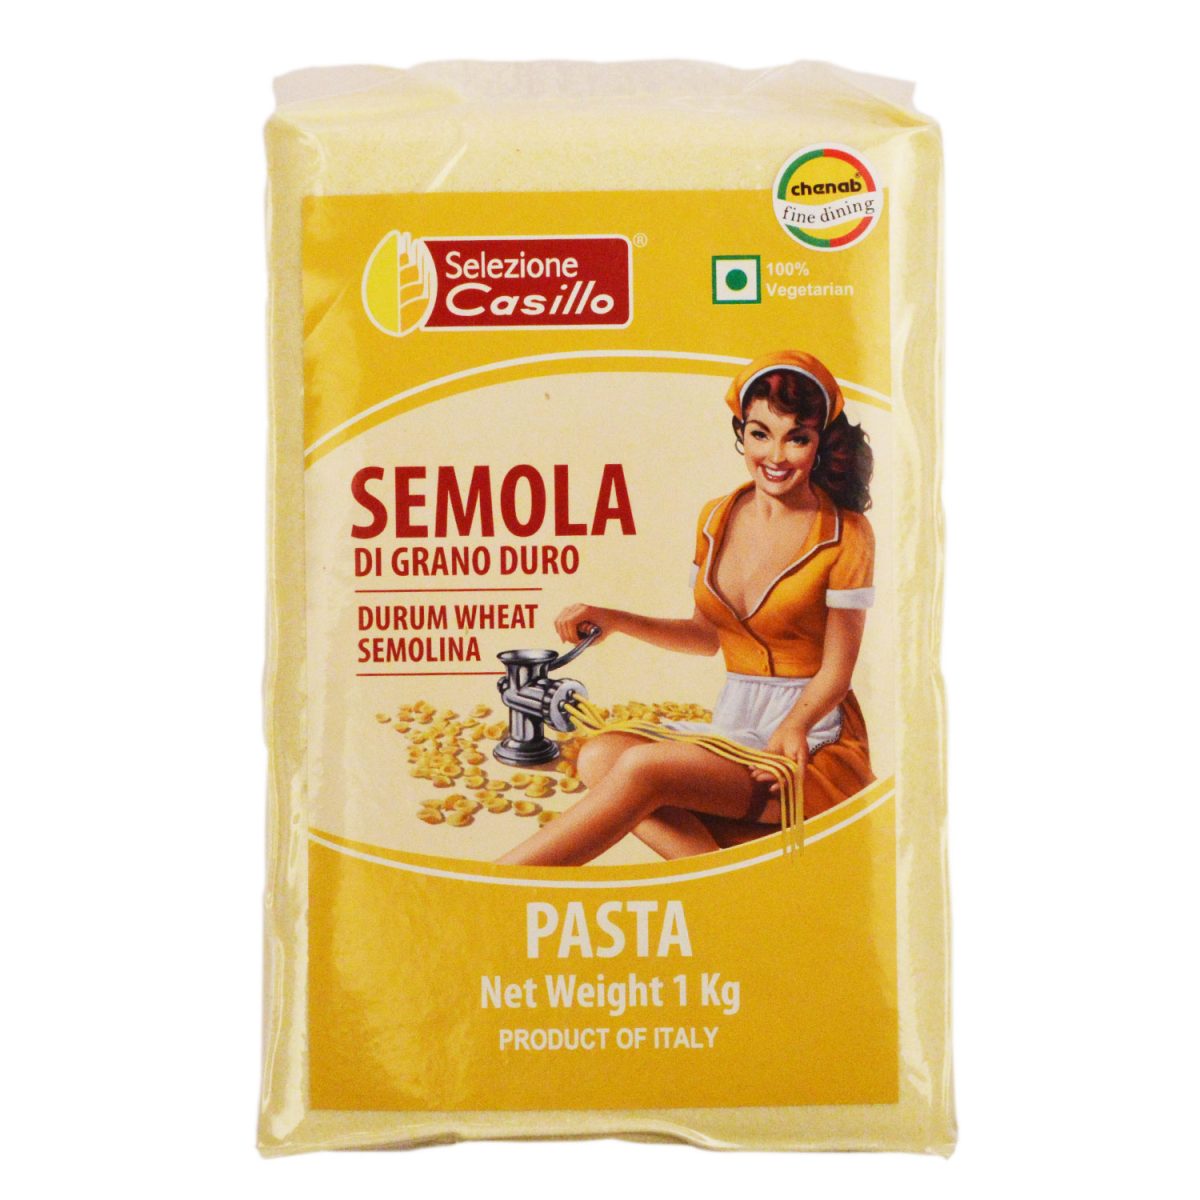 casillo-durum-wheat-semolina-type-italian-pasta-flour-1kg